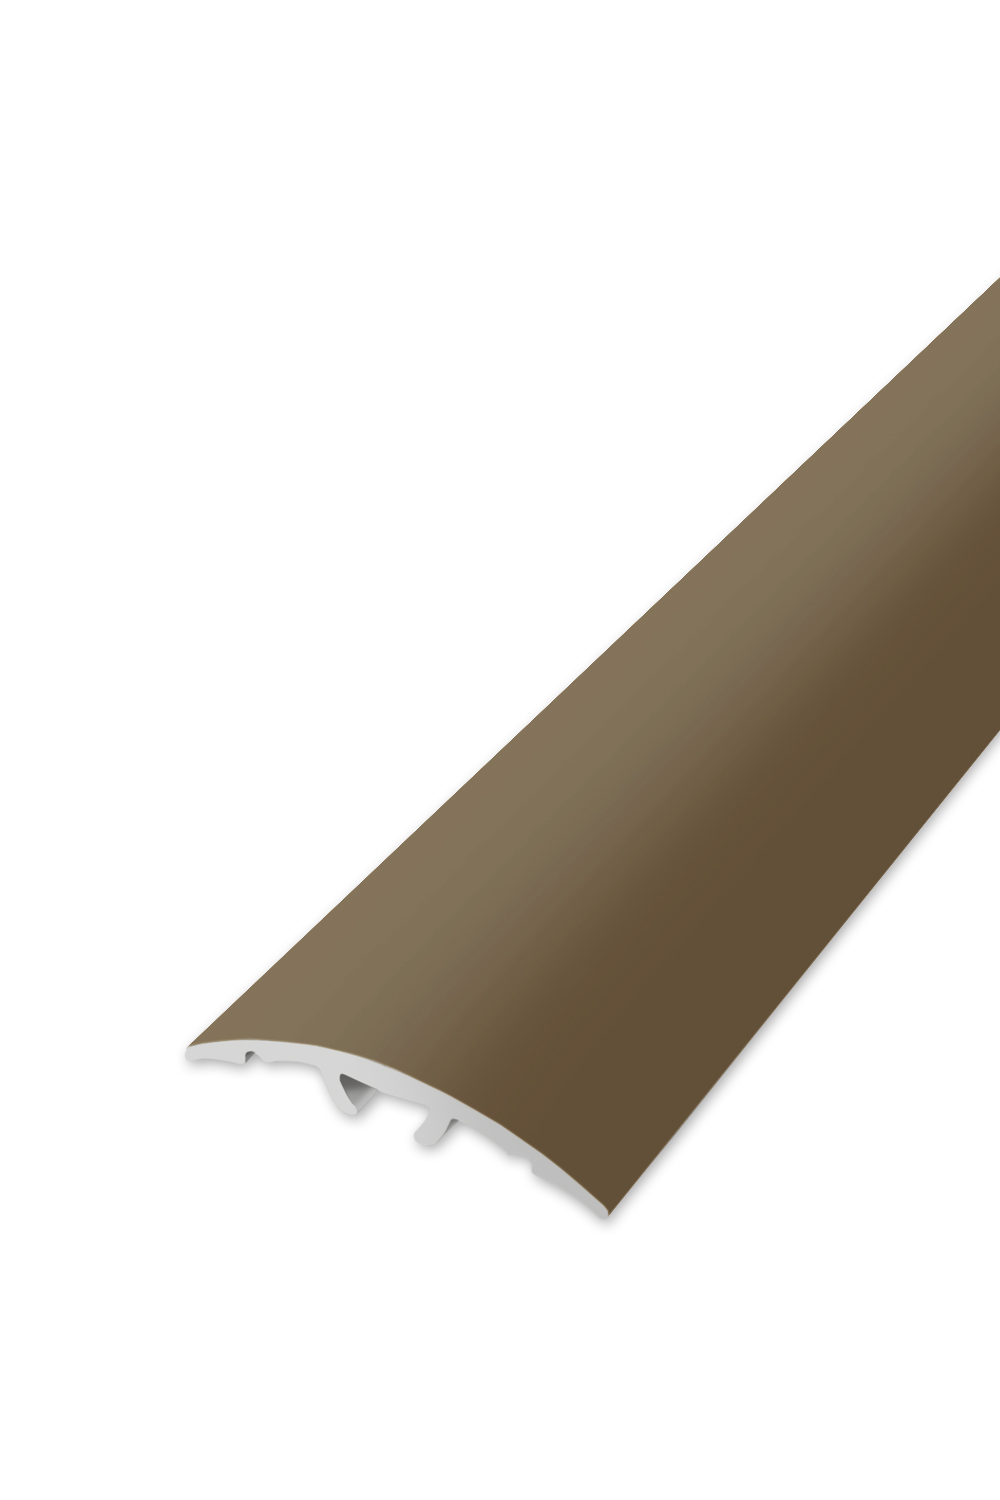 Přechodová lišta WELL 32 - Bronz 270 cm